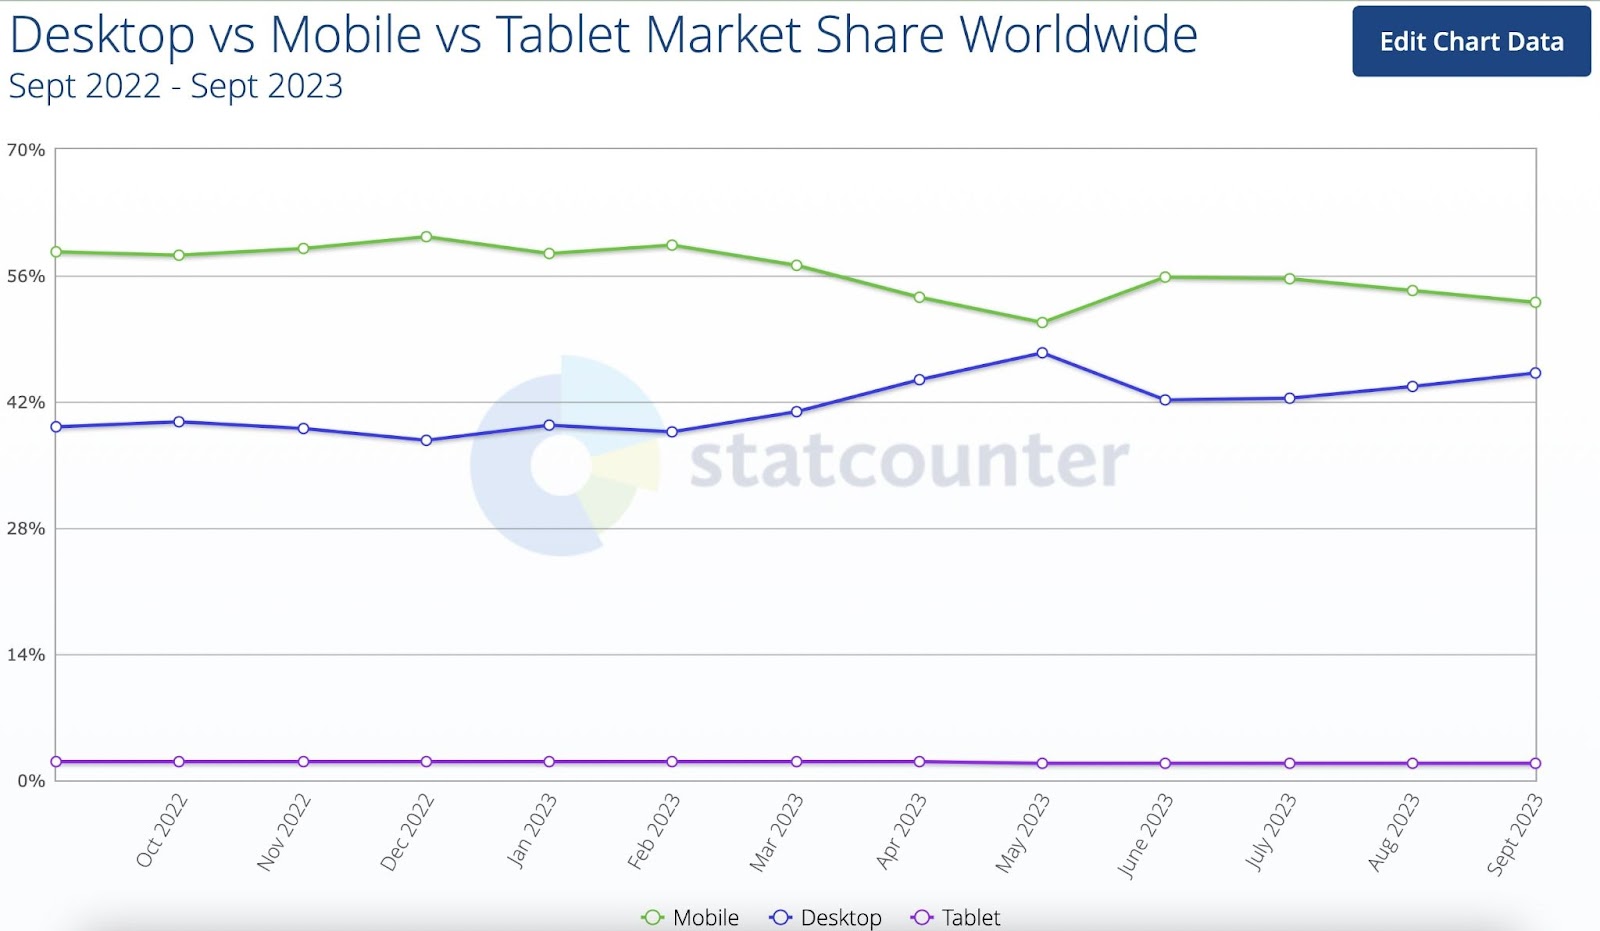 Statcounter's line graph showing data for "desktop vs mobile vs tablet market share worldwide"